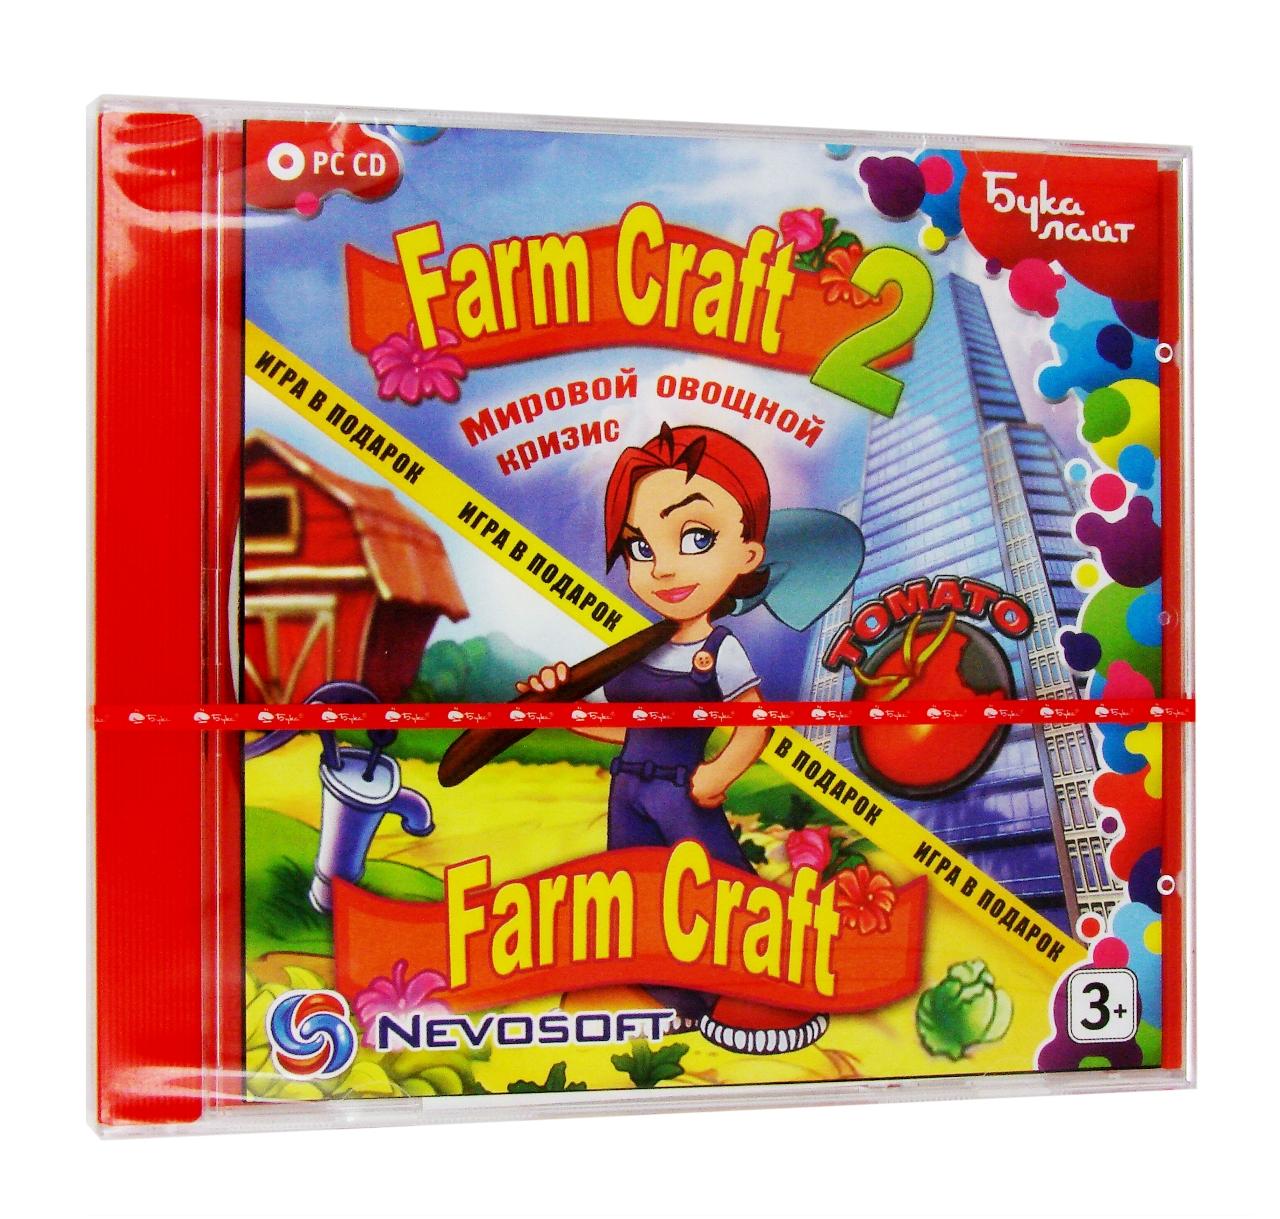 Компьютерный компакт-диск FarmCraft 2: Мировой овощной кризис (ПК), фирма "Бука", 1CD